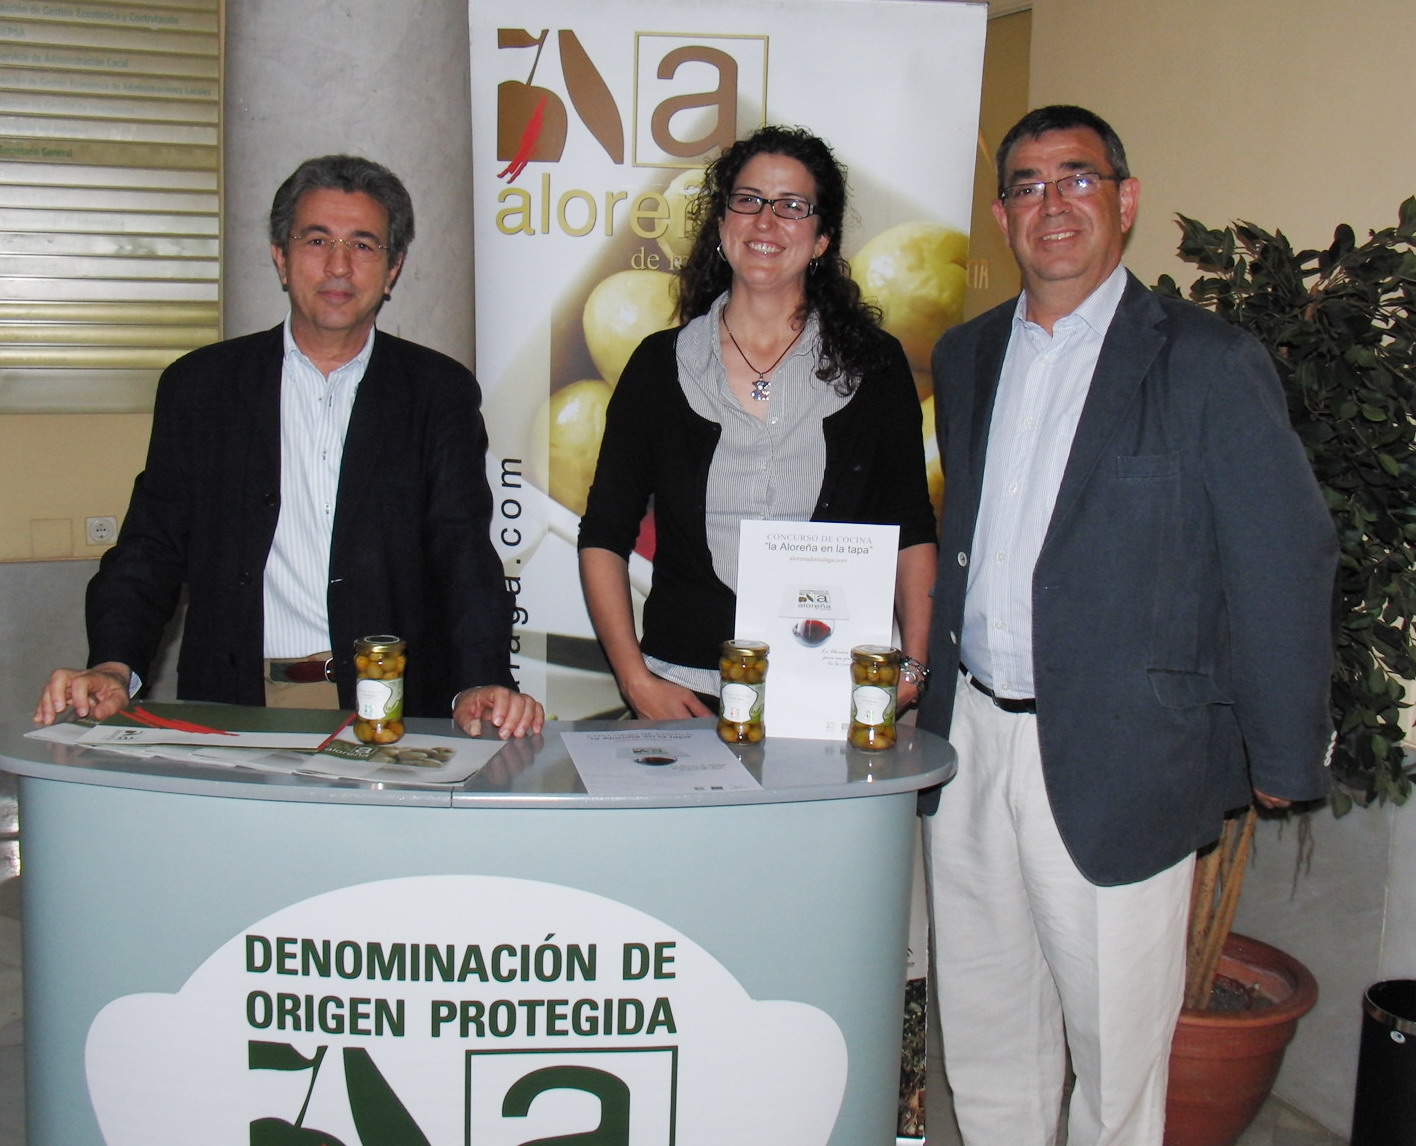  El Consejo Regulador de la DOP Alorea de Mlaga anuncia las personas finalistas del I Concurso de cocina La Alorea en la Tapa